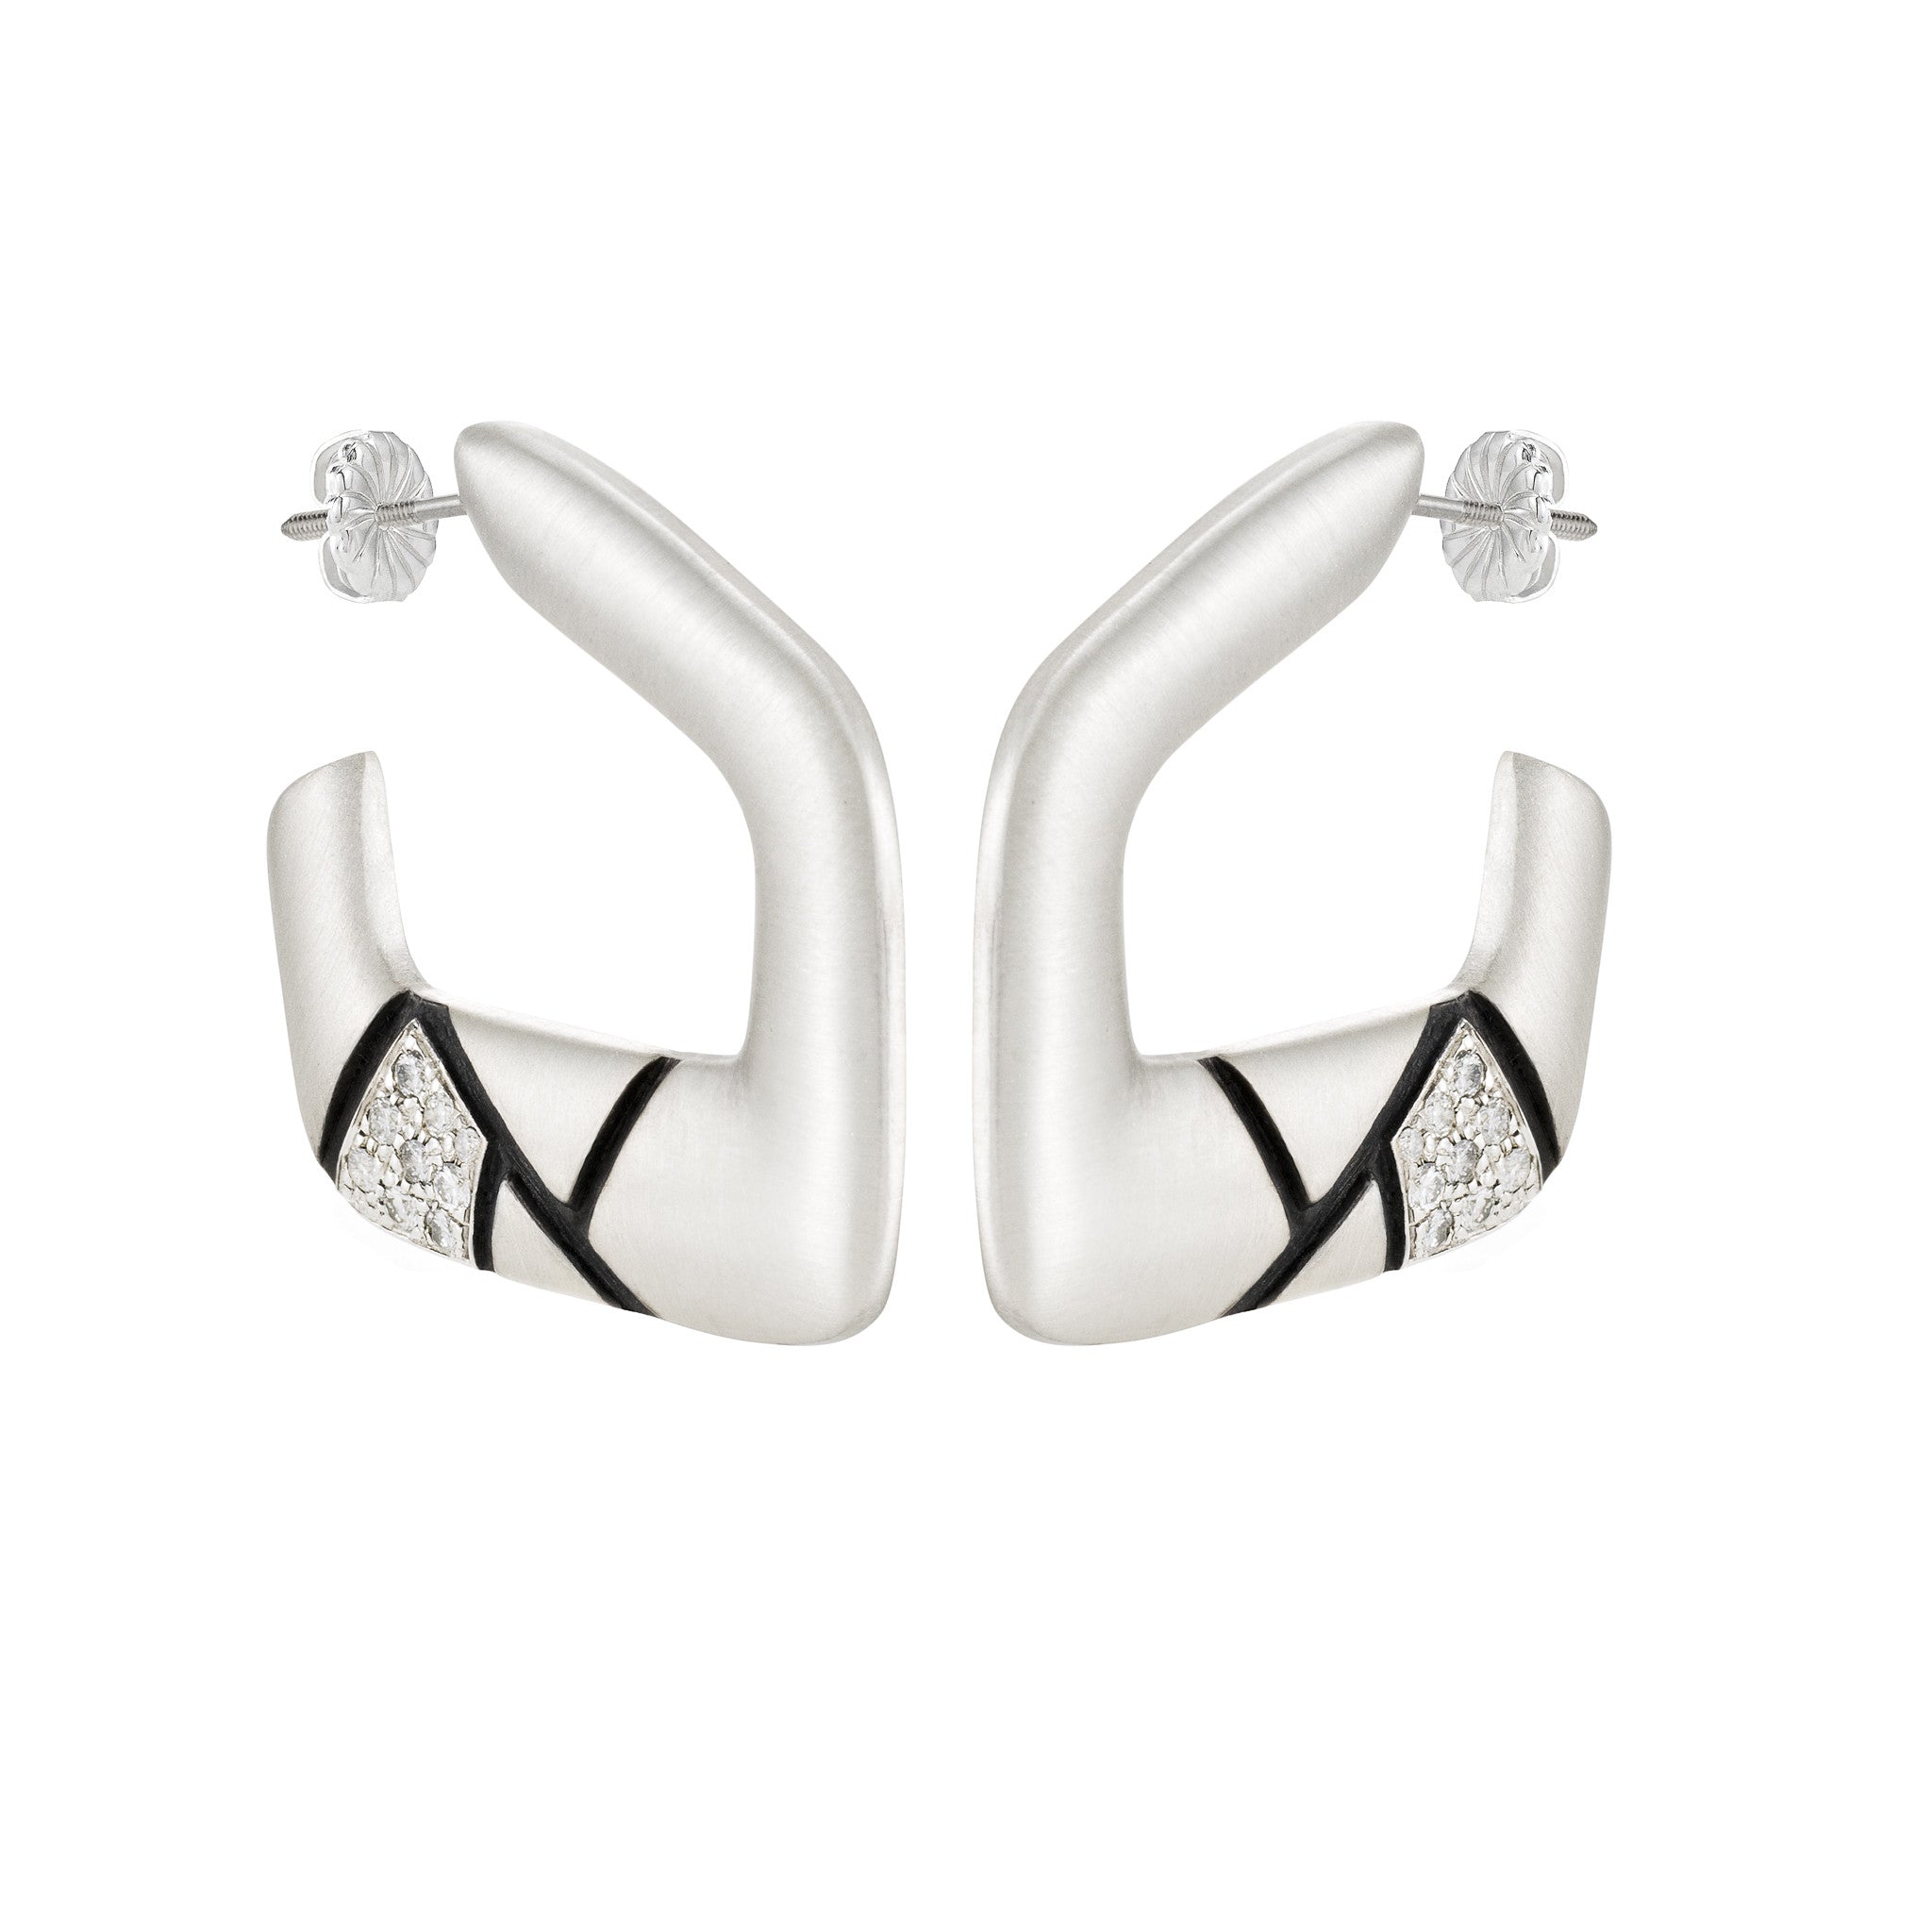 Asymmetrical Hoop Earrings: Satin/Pave